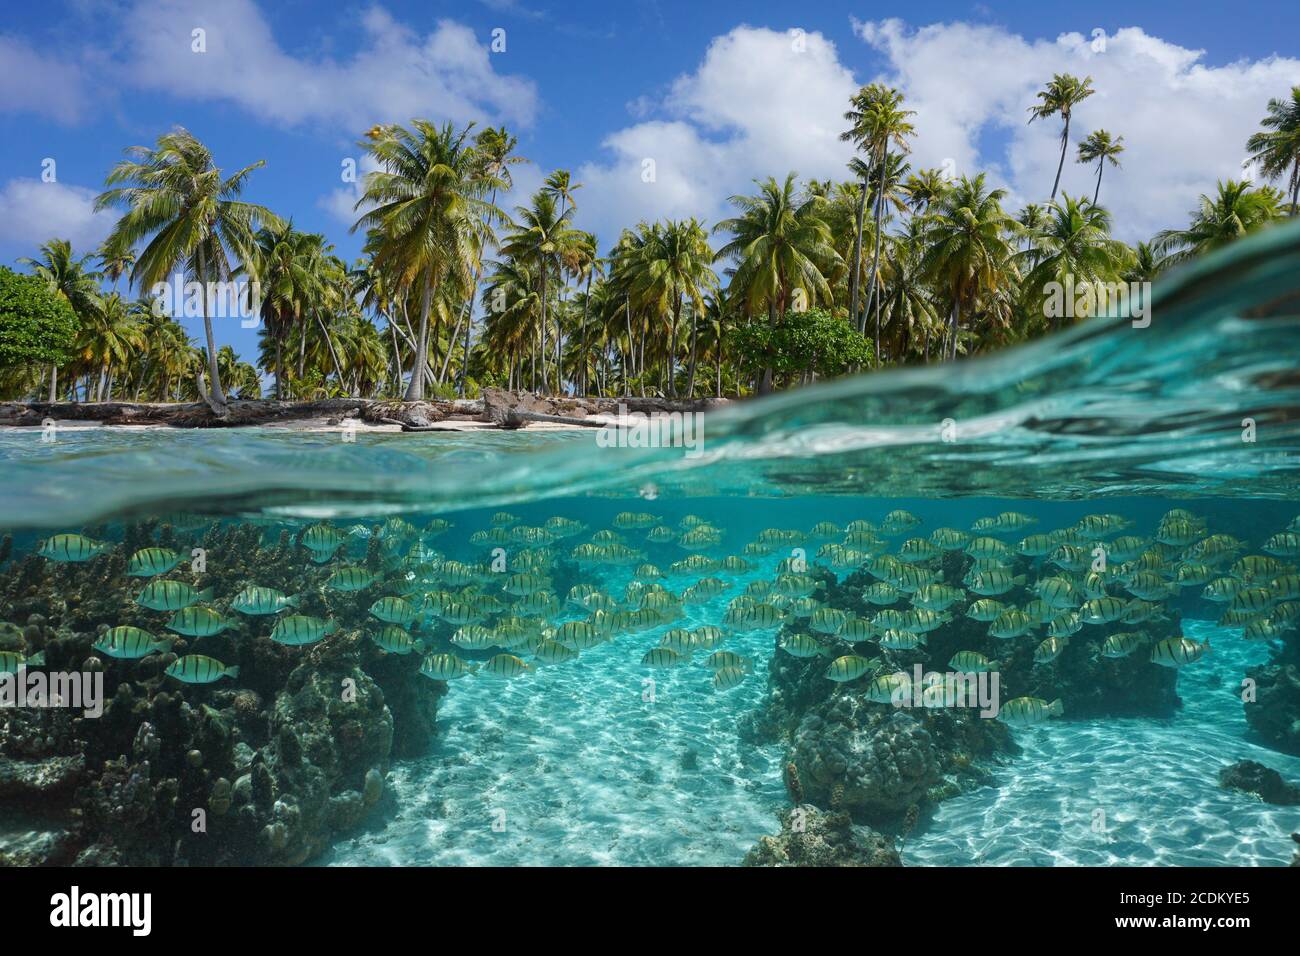 Mare tropicale, scuola di pesci sott'acqua e palme da cocco sulla riva, vista split sopra l'acqua, Polinesia francese, oceano Pacifico Foto Stock